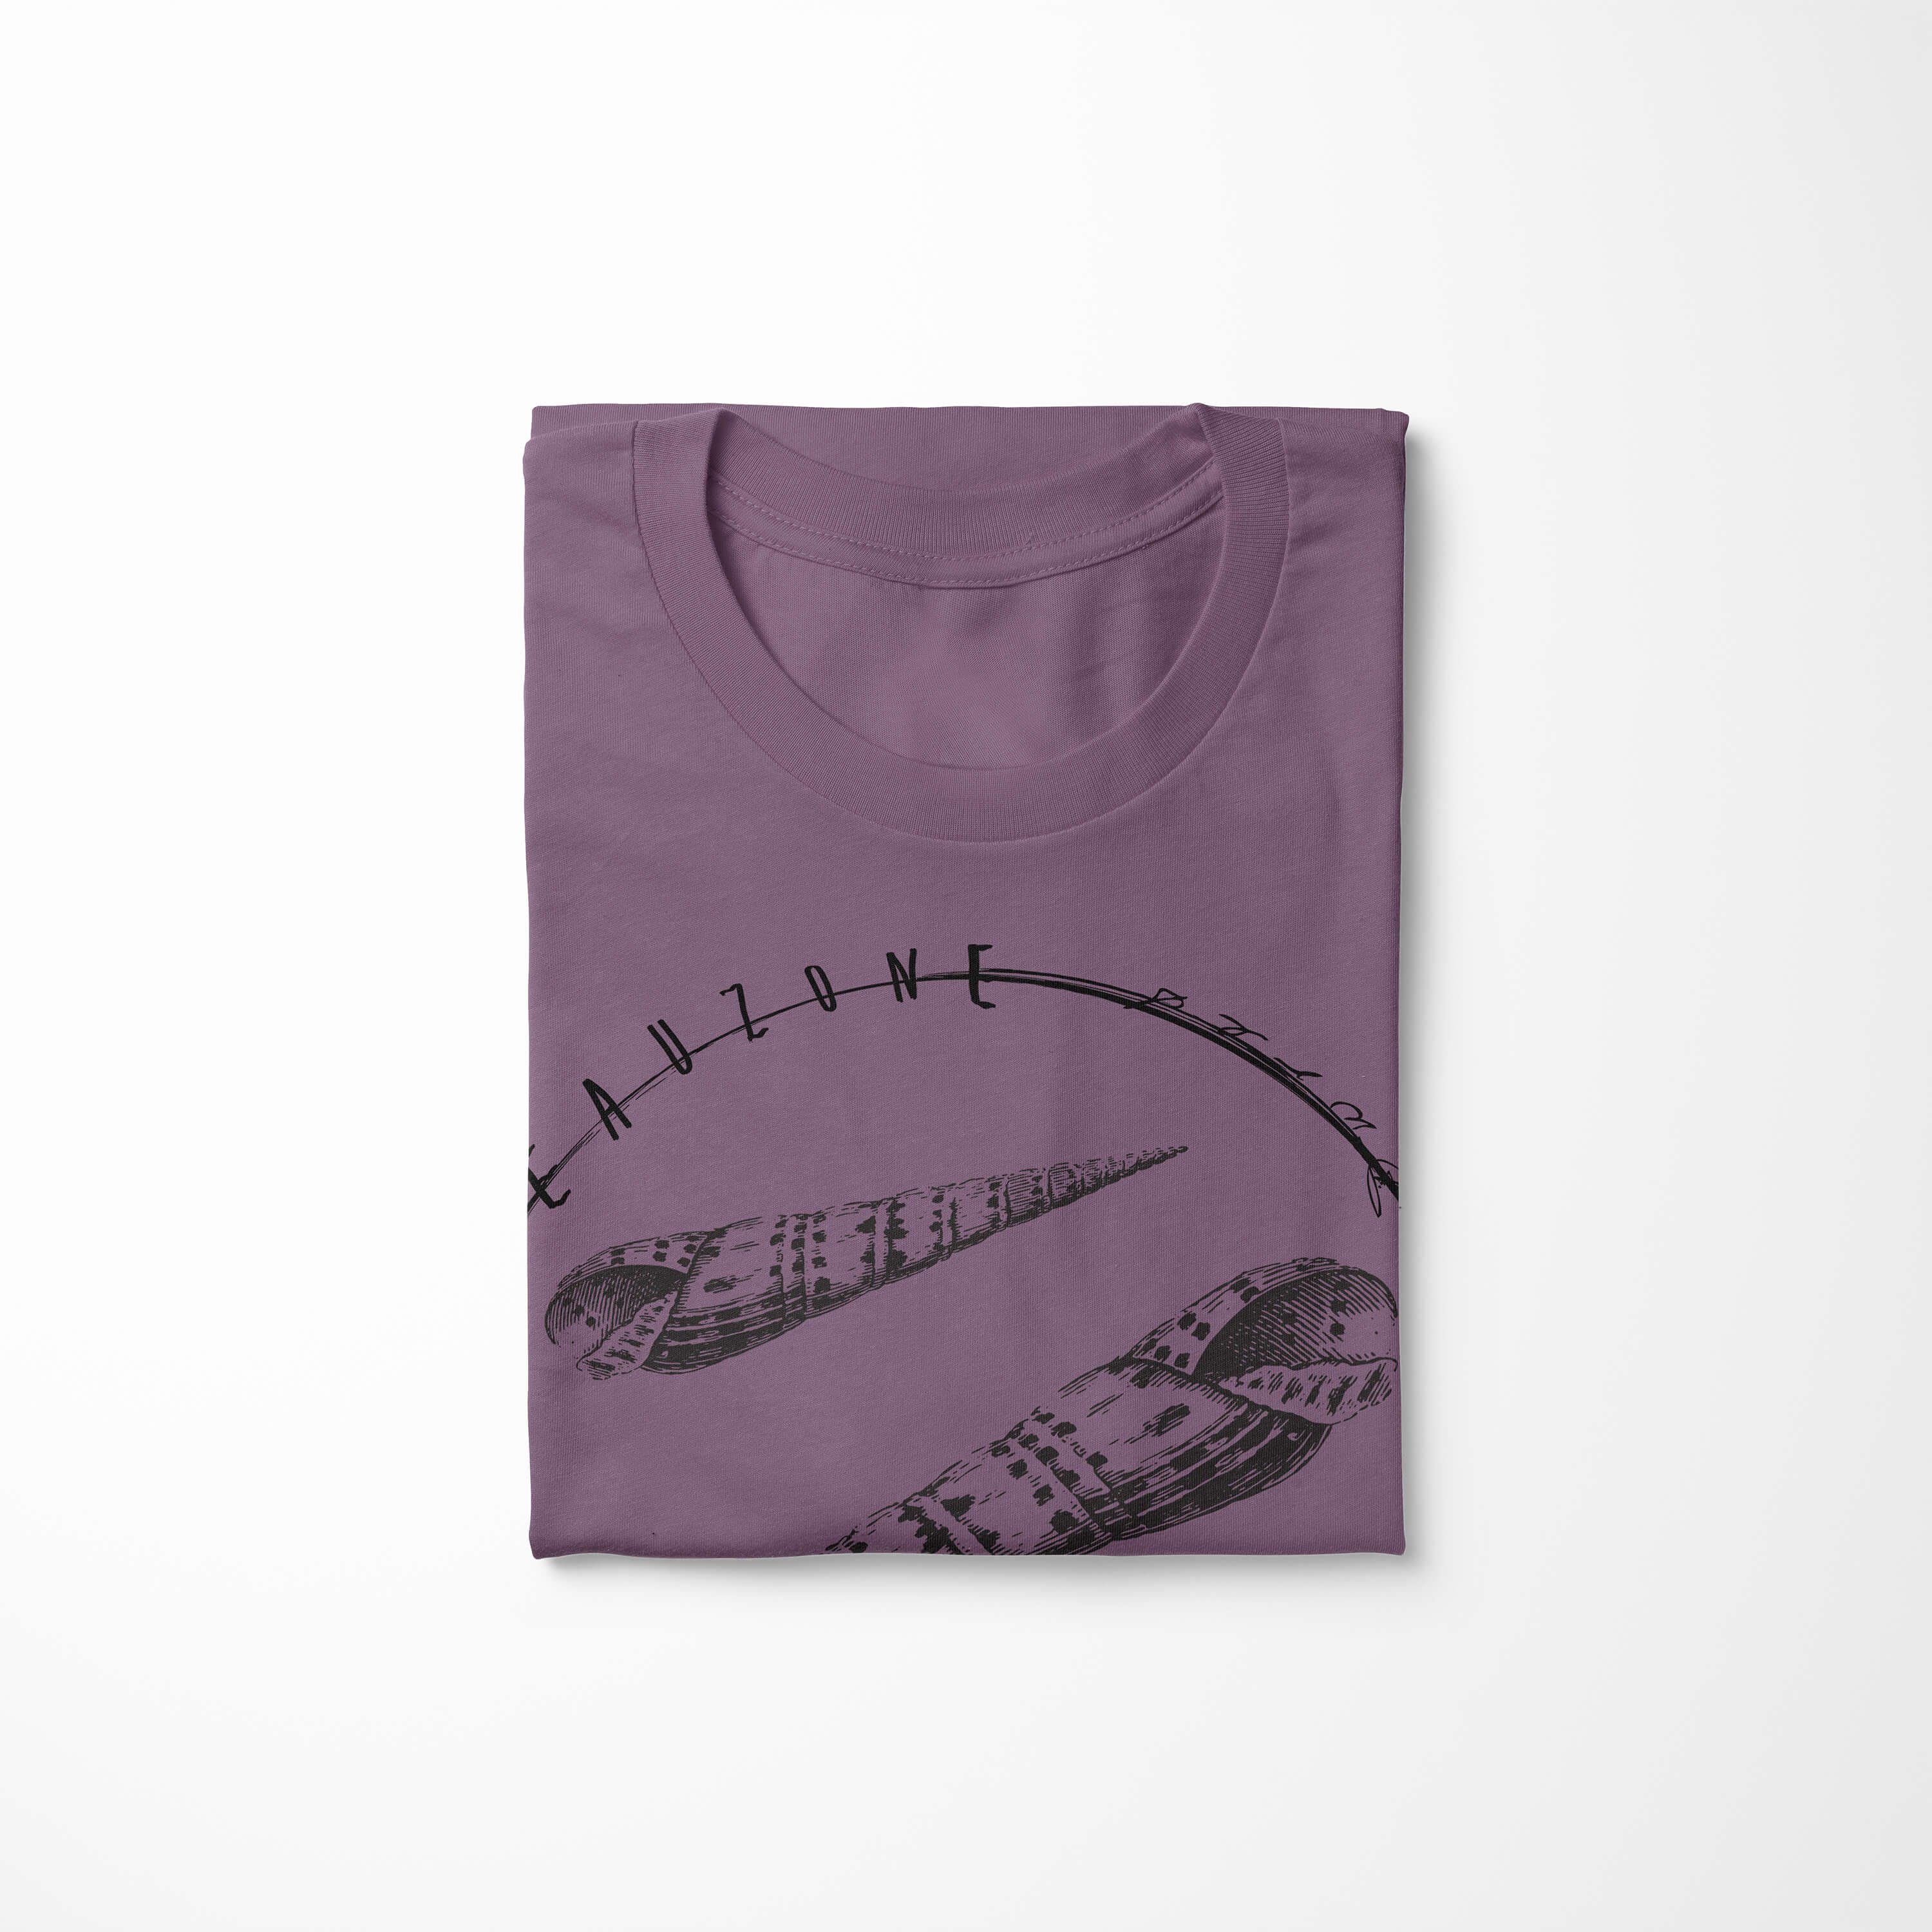 Sea sportlicher Shiraz Tiefsee Serie: T-Shirt / Struktur Sinus 075 Schnitt Creatures, Sea - Fische feine Art und T-Shirt